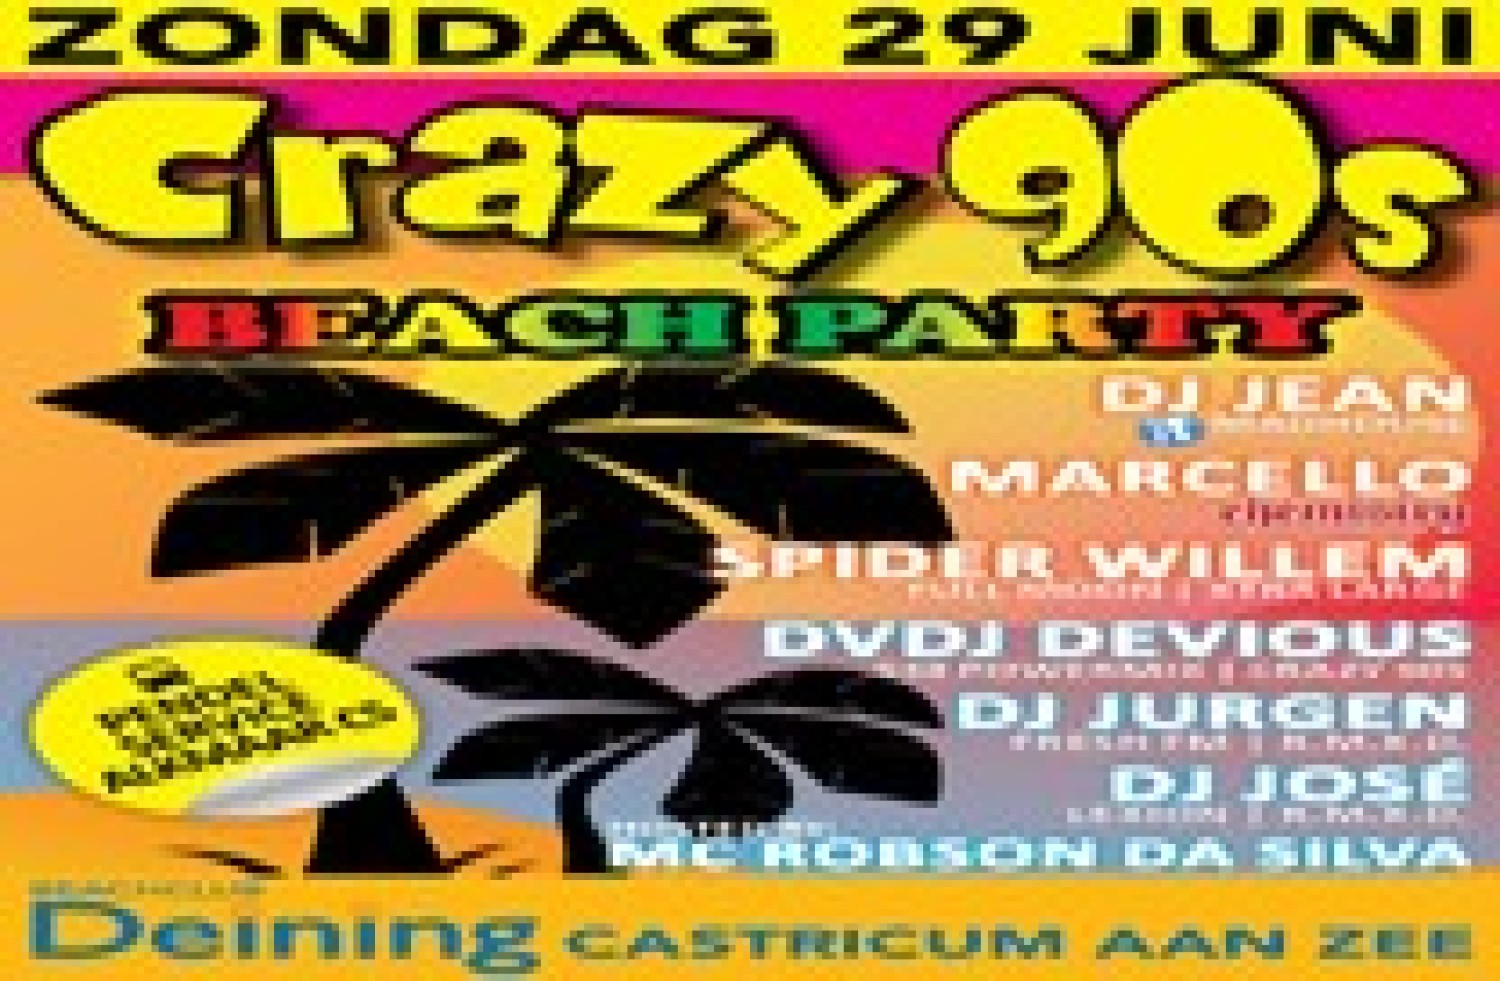 Party nieuws: Beach Party in Castricum aan Zee